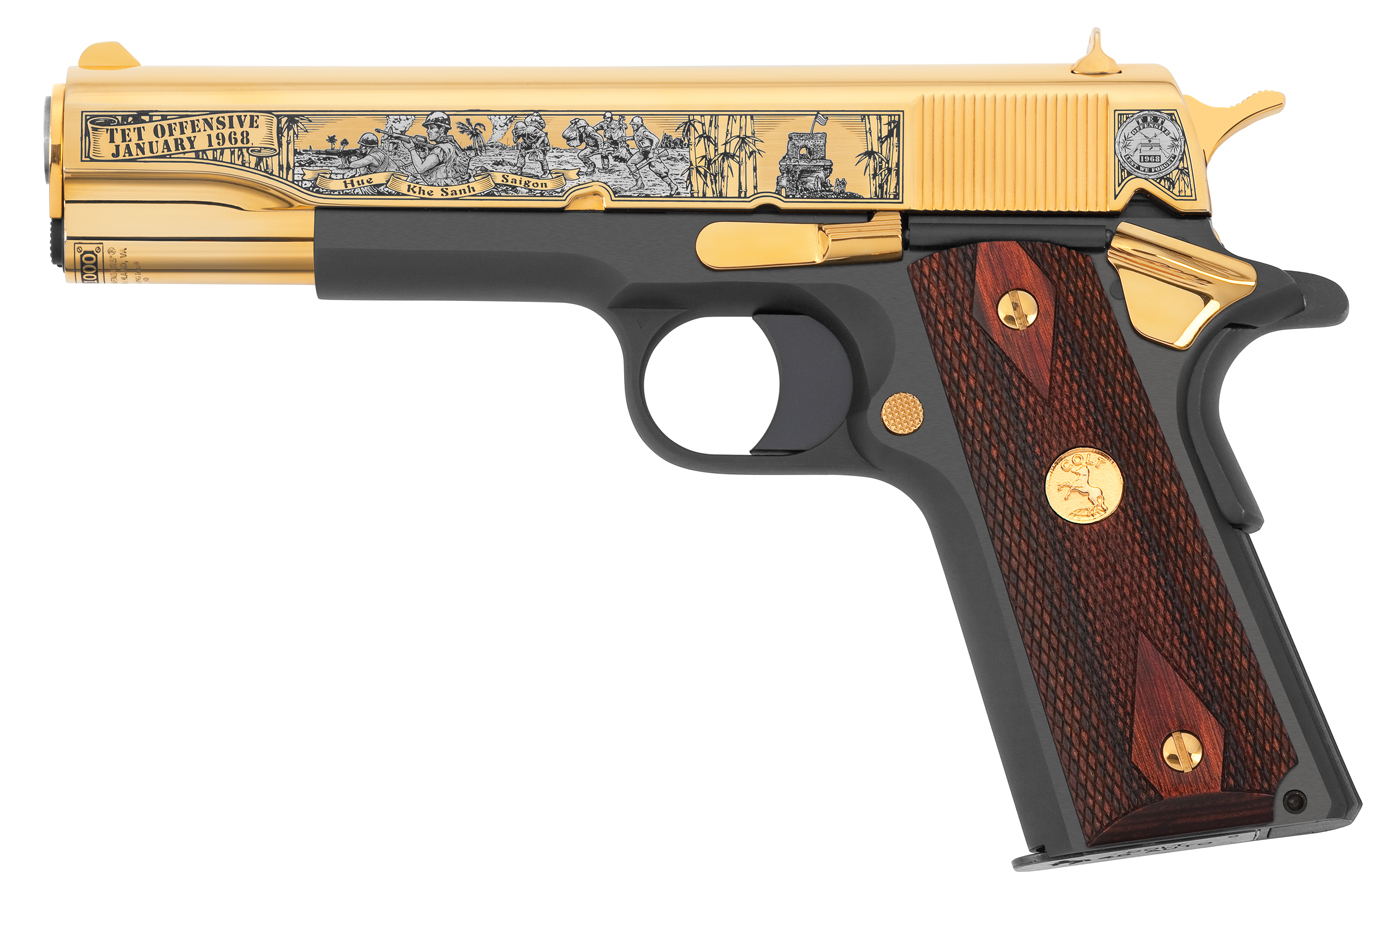 TET-Offensive-Colt-1911-Full-Left